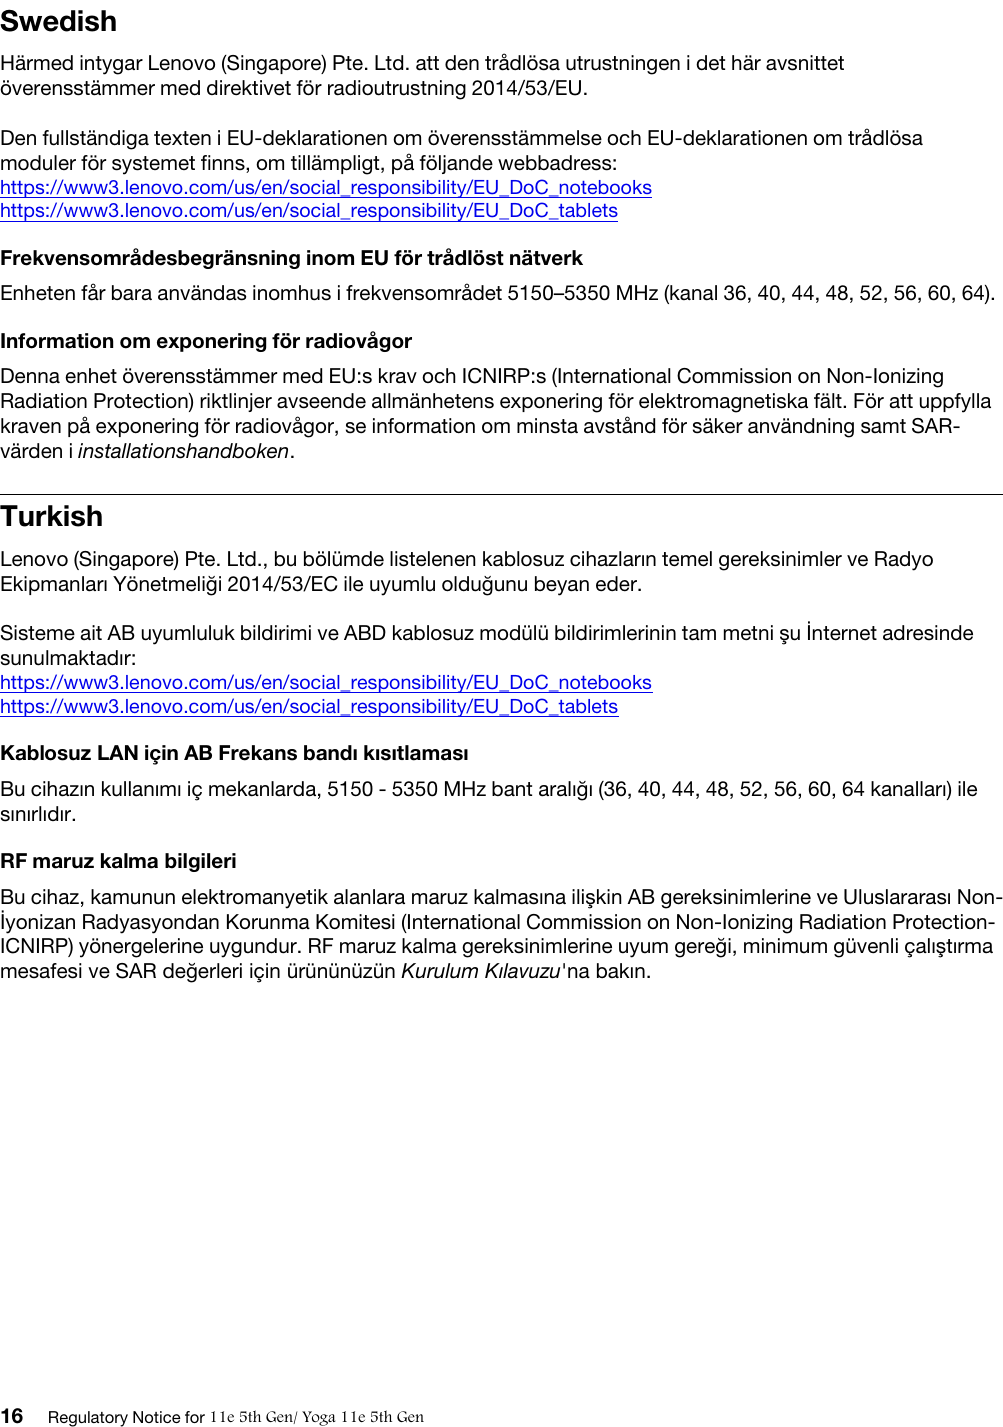 SwedishHärmed intygar Lenovo (Singapore) Pte. Ltd. att den trådlösa utrustningen i det här avsnittet överensstämmer med direktivet för radioutrustning 2014/53/EU.Den fullständiga texten i EU-deklarationen om överensstämmelse och EU-deklarationen om trådlösa moduler för systemet finns, om tillämpligt, på följande webbadress:  https://www3.lenovo.com/us/en/social_responsibility/EU_DoC_notebookshttps://www3.lenovo.com/us/en/social_responsibility/EU_DoC_tabletsFrekvensområdesbegränsning inom EU för trådlöst nätverkEnheten får bara användas inomhus i frekvensområdet 5150–5350 MHz (kanal 36, 40, 44, 48, 52, 56, 60, 64).Information om exponering för radiovågorDenna enhet överensstämmer med EU:s krav och ICNIRP:s (International Commission on Non-Ionizing Radiation Protection) riktlinjer avseende allmänhetens exponering för elektromagnetiska fält. För att uppfylla kraven på exponering för radiovågor, se information om minsta avstånd för säker användning samt SAR- värden i installationshandboken.TurkishLenovo (Singapore) Pte. Ltd., bu bölümde listelenen kablosuz cihazların temel gereksinimler ve Radyo Ekipmanları Yönetmeliği 2014/53/EC ile uyumlu olduğunu beyan eder. Sisteme ait AB uyumluluk bildirimi ve ABD kablosuz modülü bildirimlerinin tam metni şu İnternet adresinde sunulmaktadır:  https://www3.lenovo.com/us/en/social_responsibility/EU_DoC_notebookshttps://www3.lenovo.com/us/en/social_responsibility/EU_DoC_tabletsKablosuz LAN için AB Frekans bandı kısıtlamasıBu cihazın kullanımı iç mekanlarda, 5150 - 5350 MHz bant aralığı (36, 40, 44, 48, 52, 56, 60, 64 kanalları) ile sınırlıdır.RF maruz kalma bilgileriBu cihaz, kamunun elektromanyetik alanlara maruz kalmasına ilişkin AB gereksinimlerine ve Uluslararası Non- İyonizan Radyasyondan Korunma Komitesi (International Commission on Non-Ionizing Radiation Protection- ICNIRP) yönergelerine uygundur. RF maruz kalma gereksinimlerine uyum gereği, minimum güvenli çalıştırma mesafesi ve SAR değerleri için ürününüzün Kurulum Kılavuzu&apos;na bakın.16 Regulatory Notice for 11e 5th Gen/ Yoga 11e 5th Gen